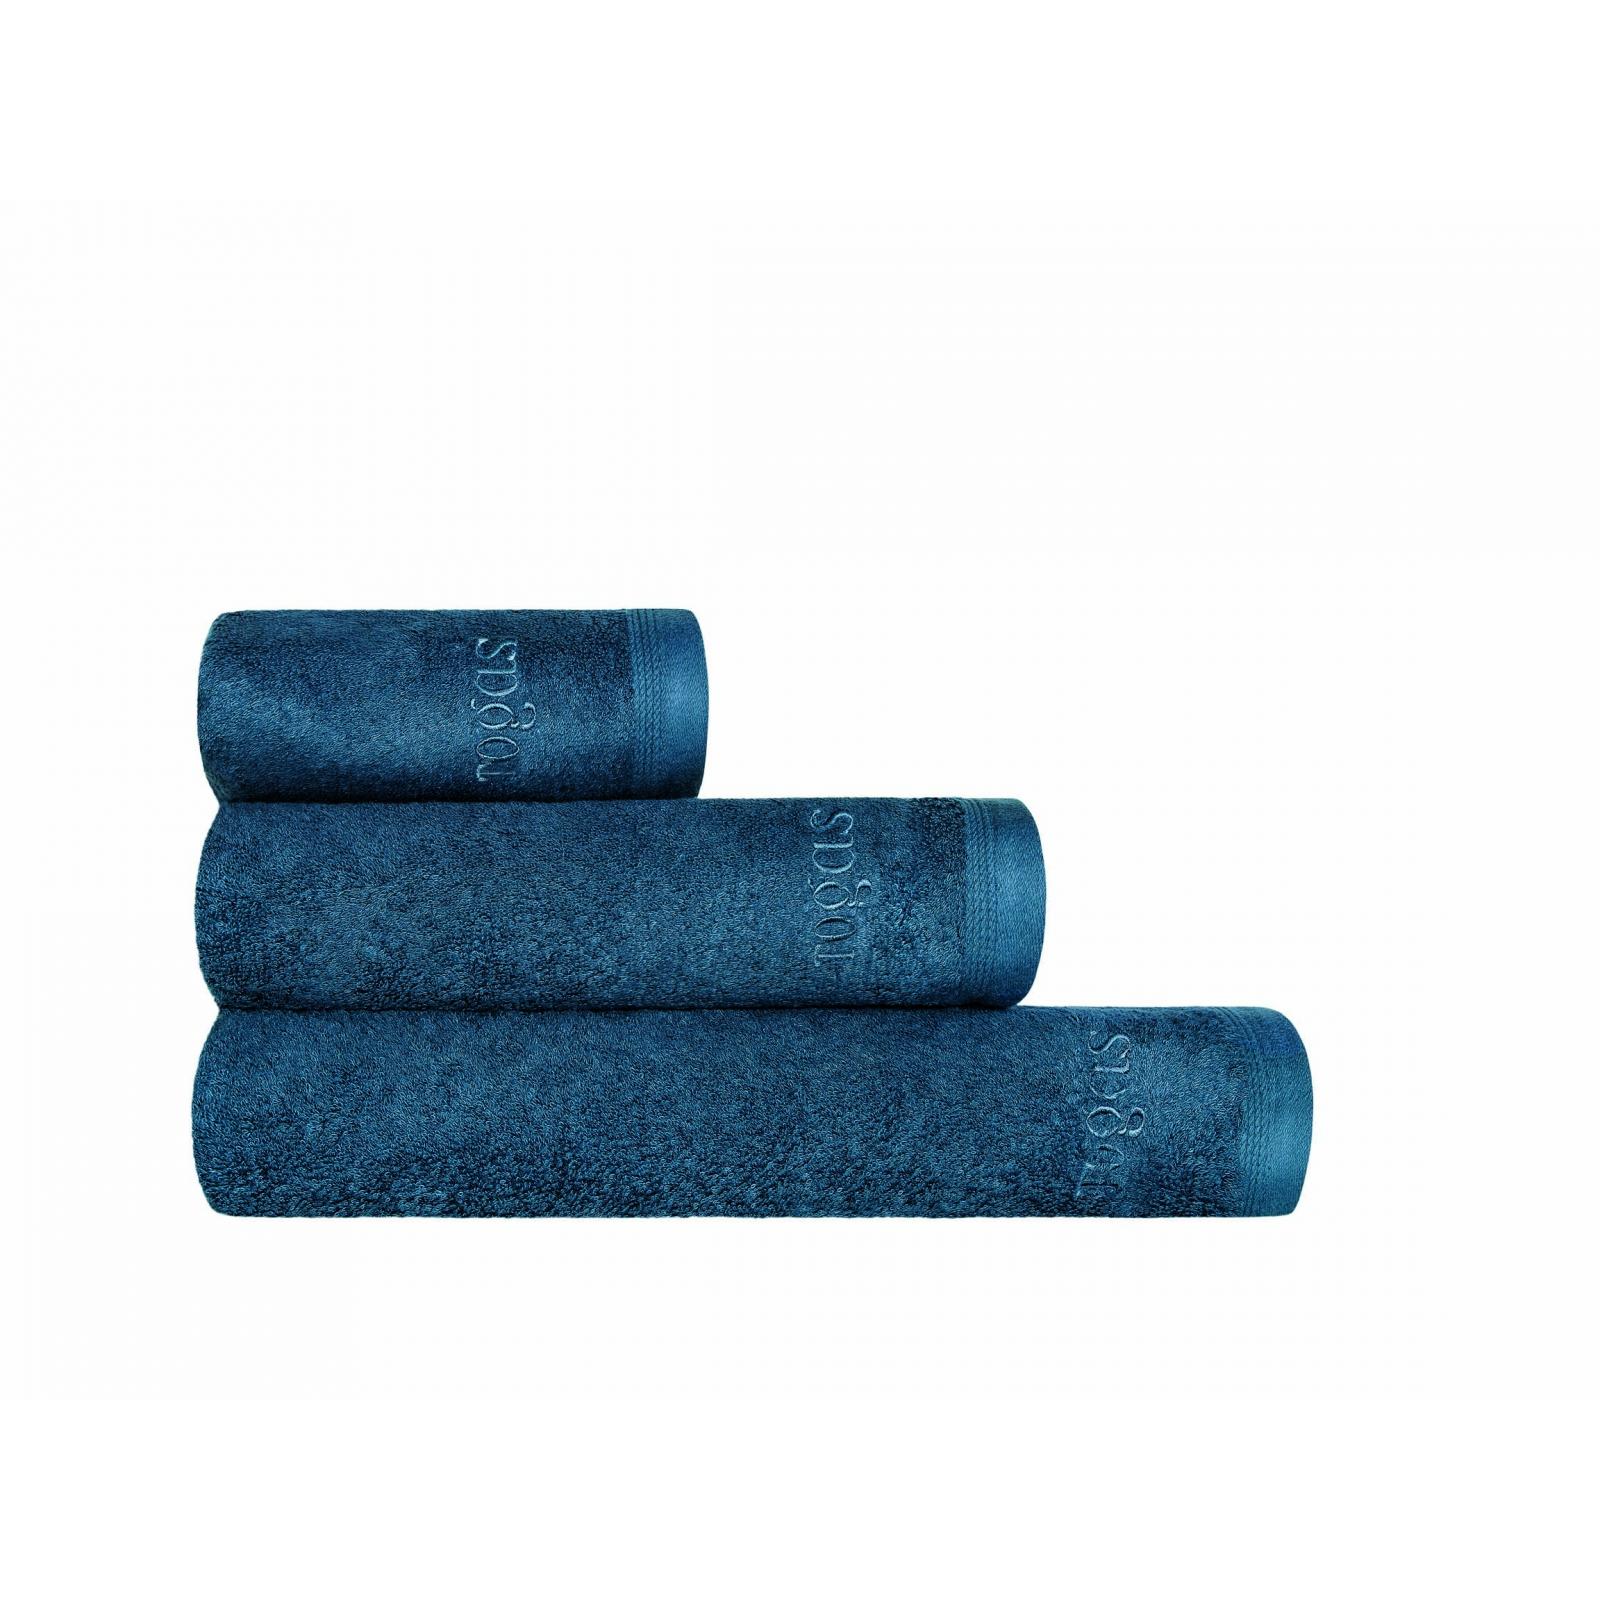 Полотенце Togas Пуатье темно-синее 50х100 см полотенце togas пуатье темно синее 40х60 см